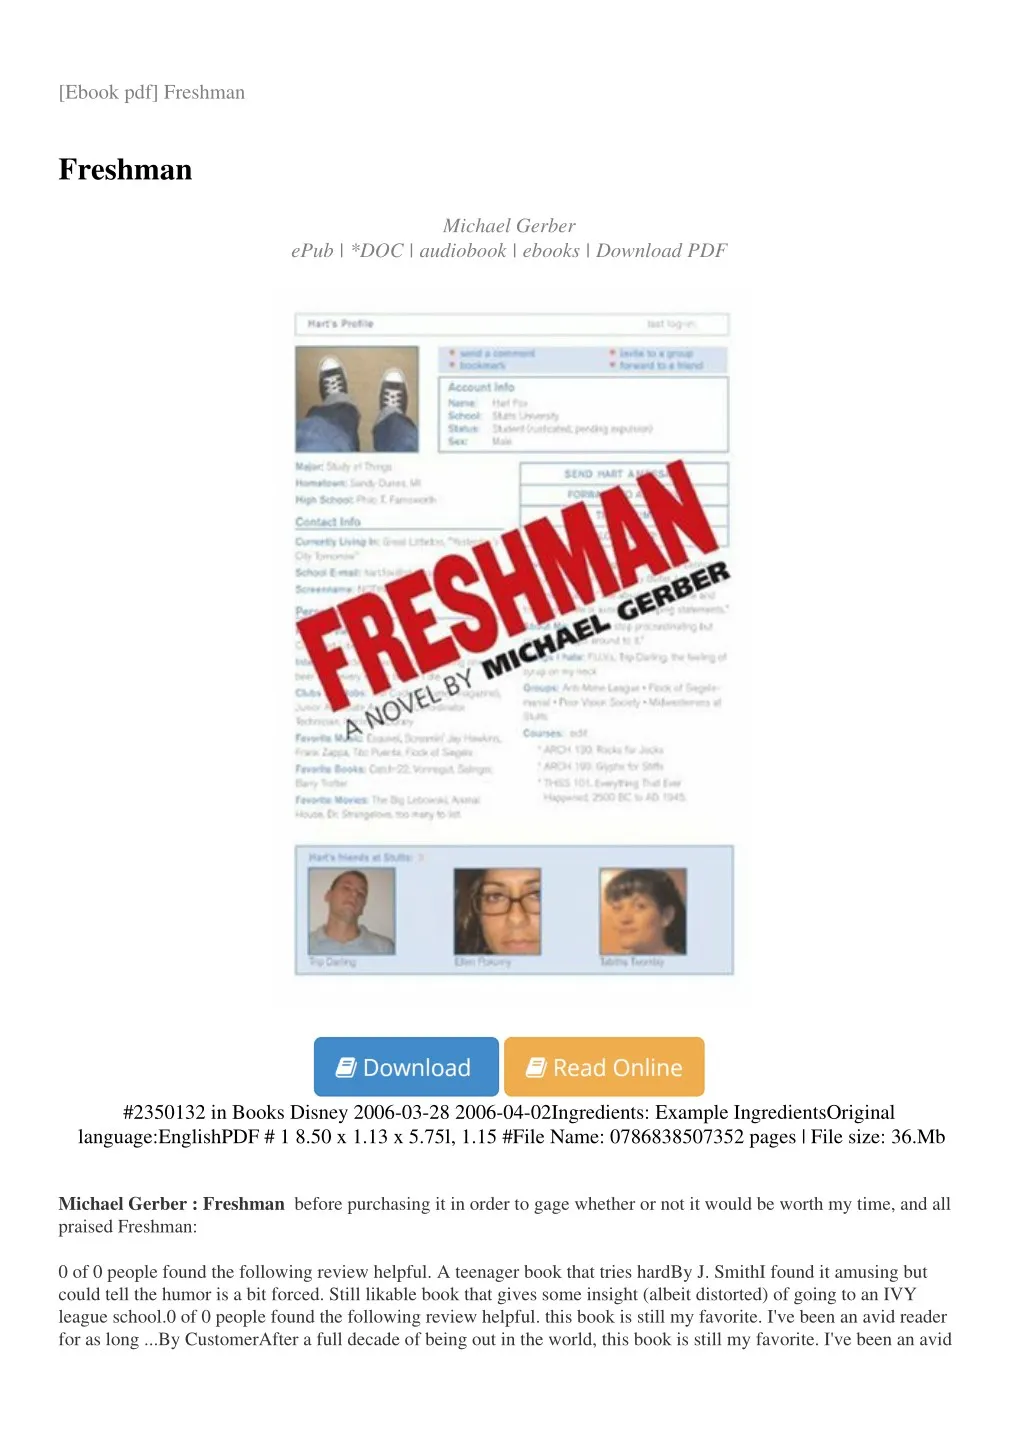 ebook pdf freshman